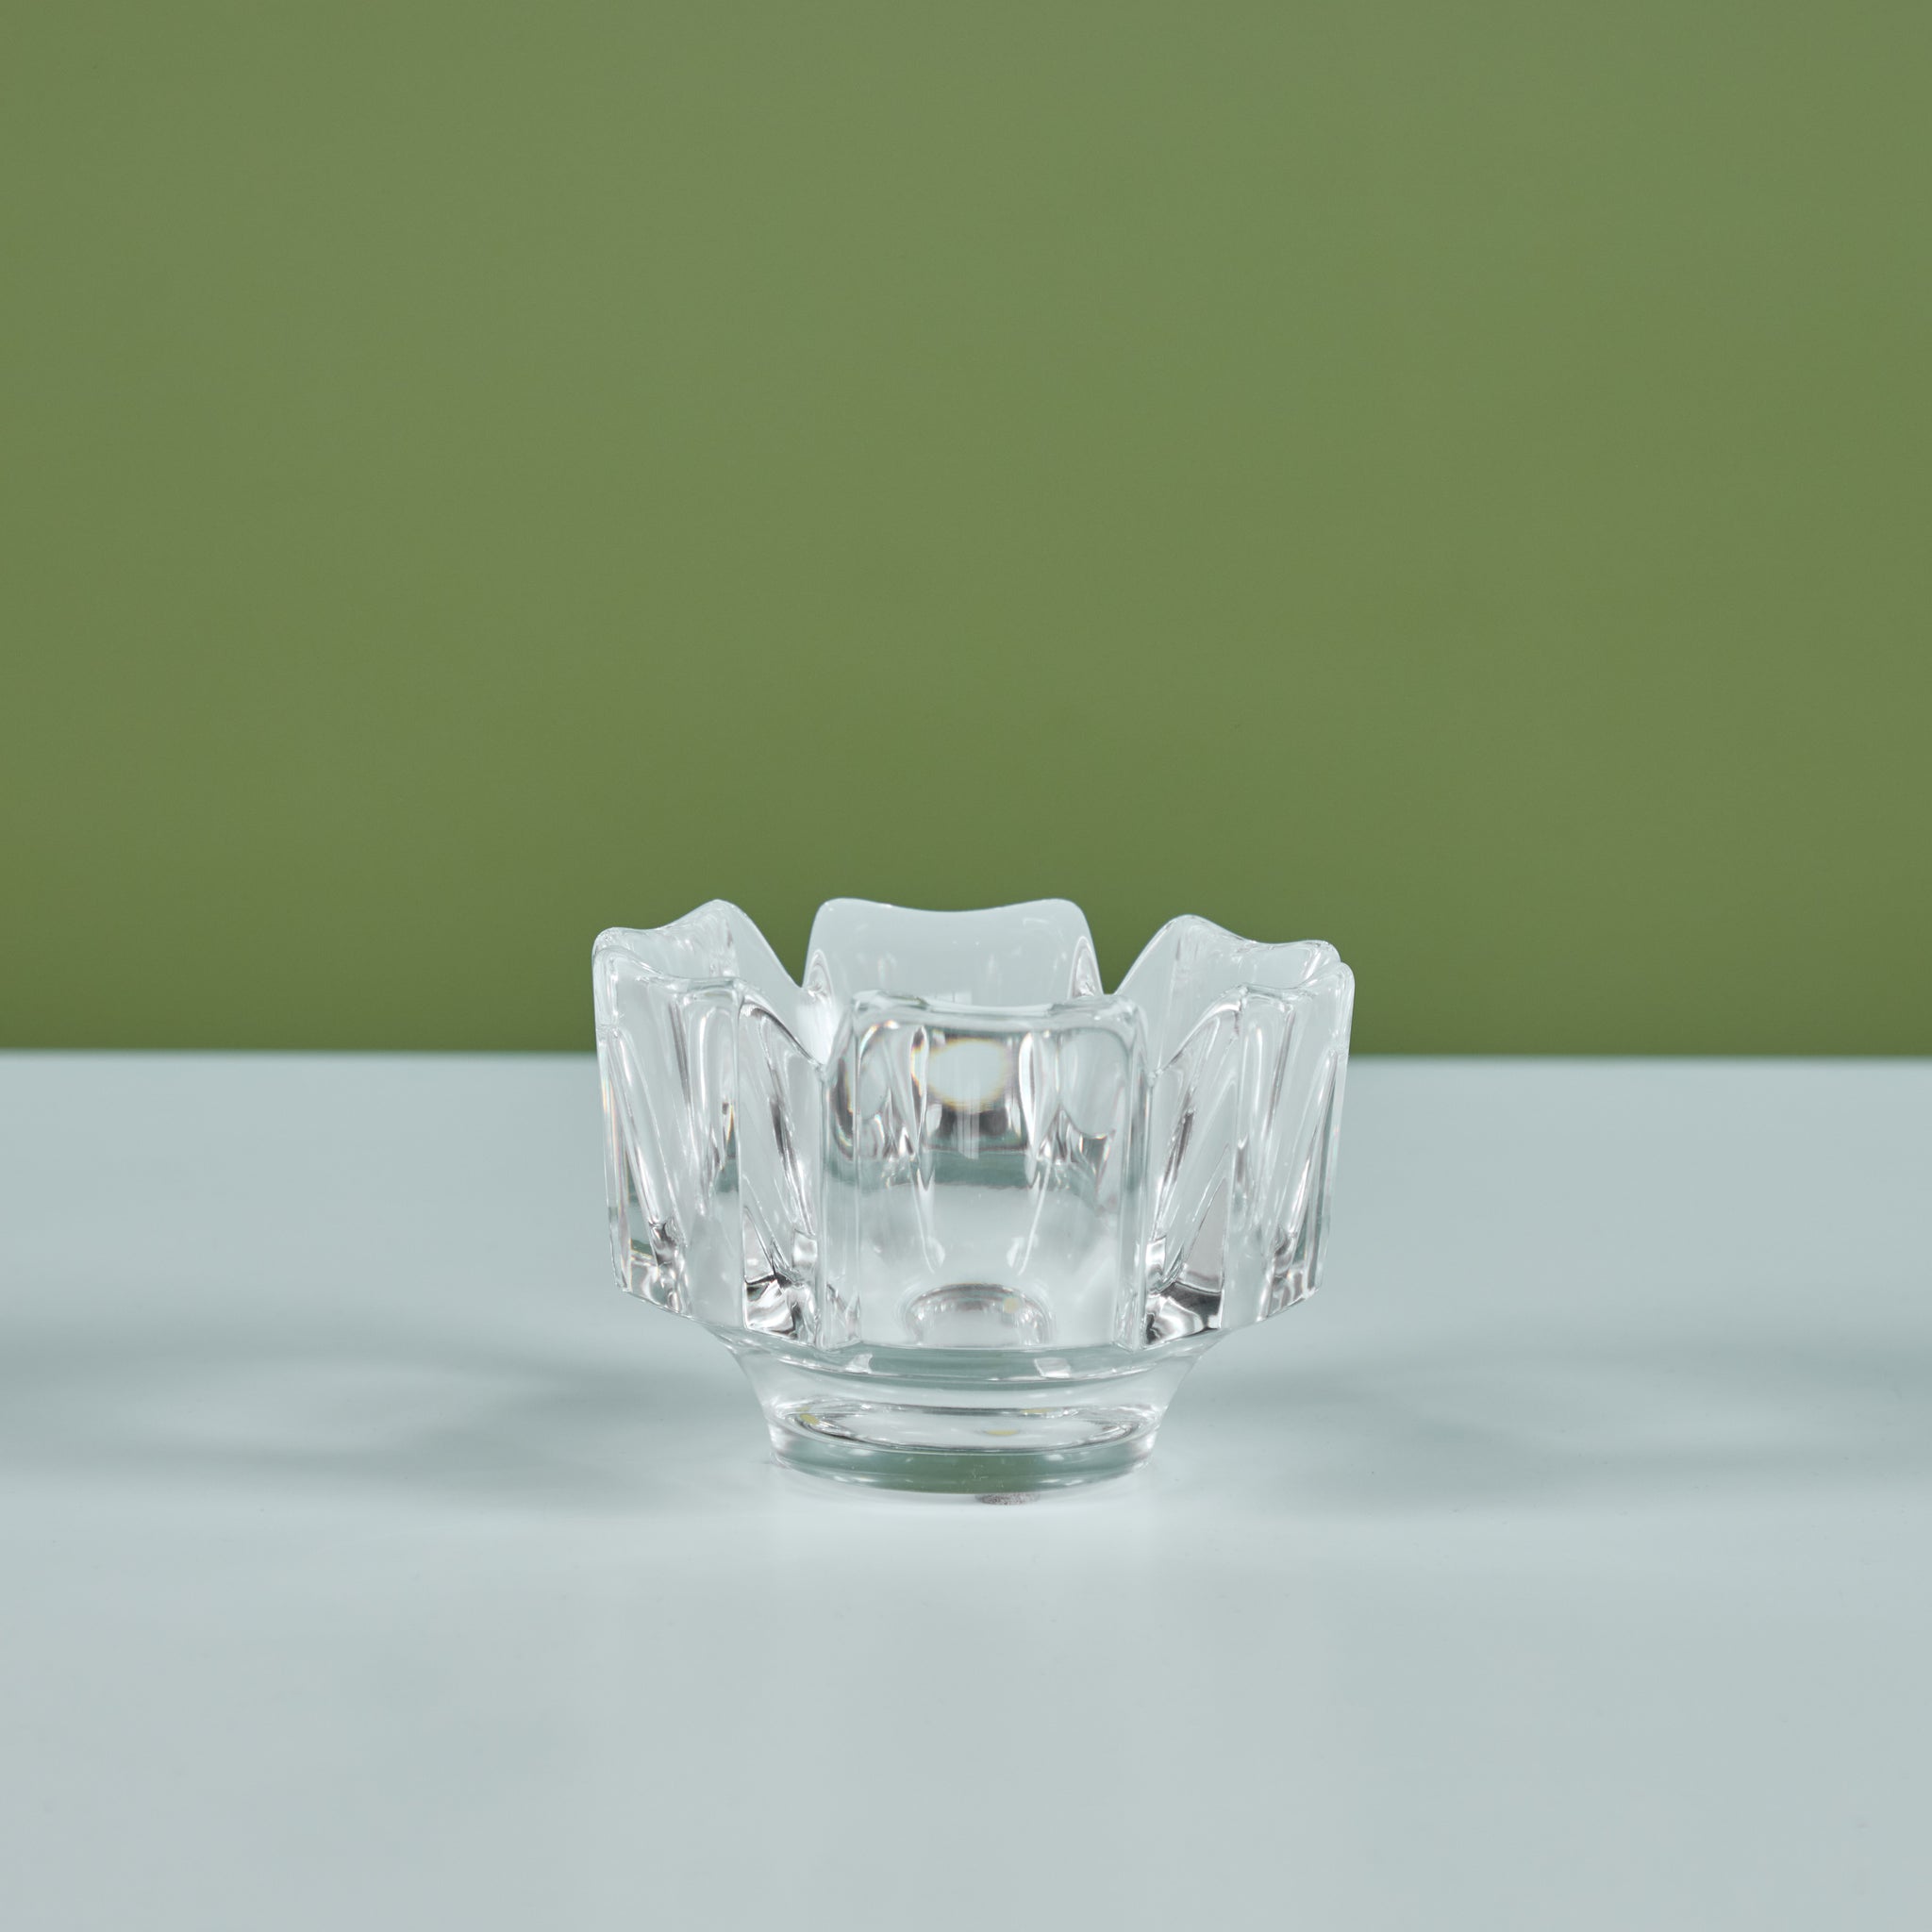 Orrefors Crystal 'Corona' Bowl by Lars Hellsten